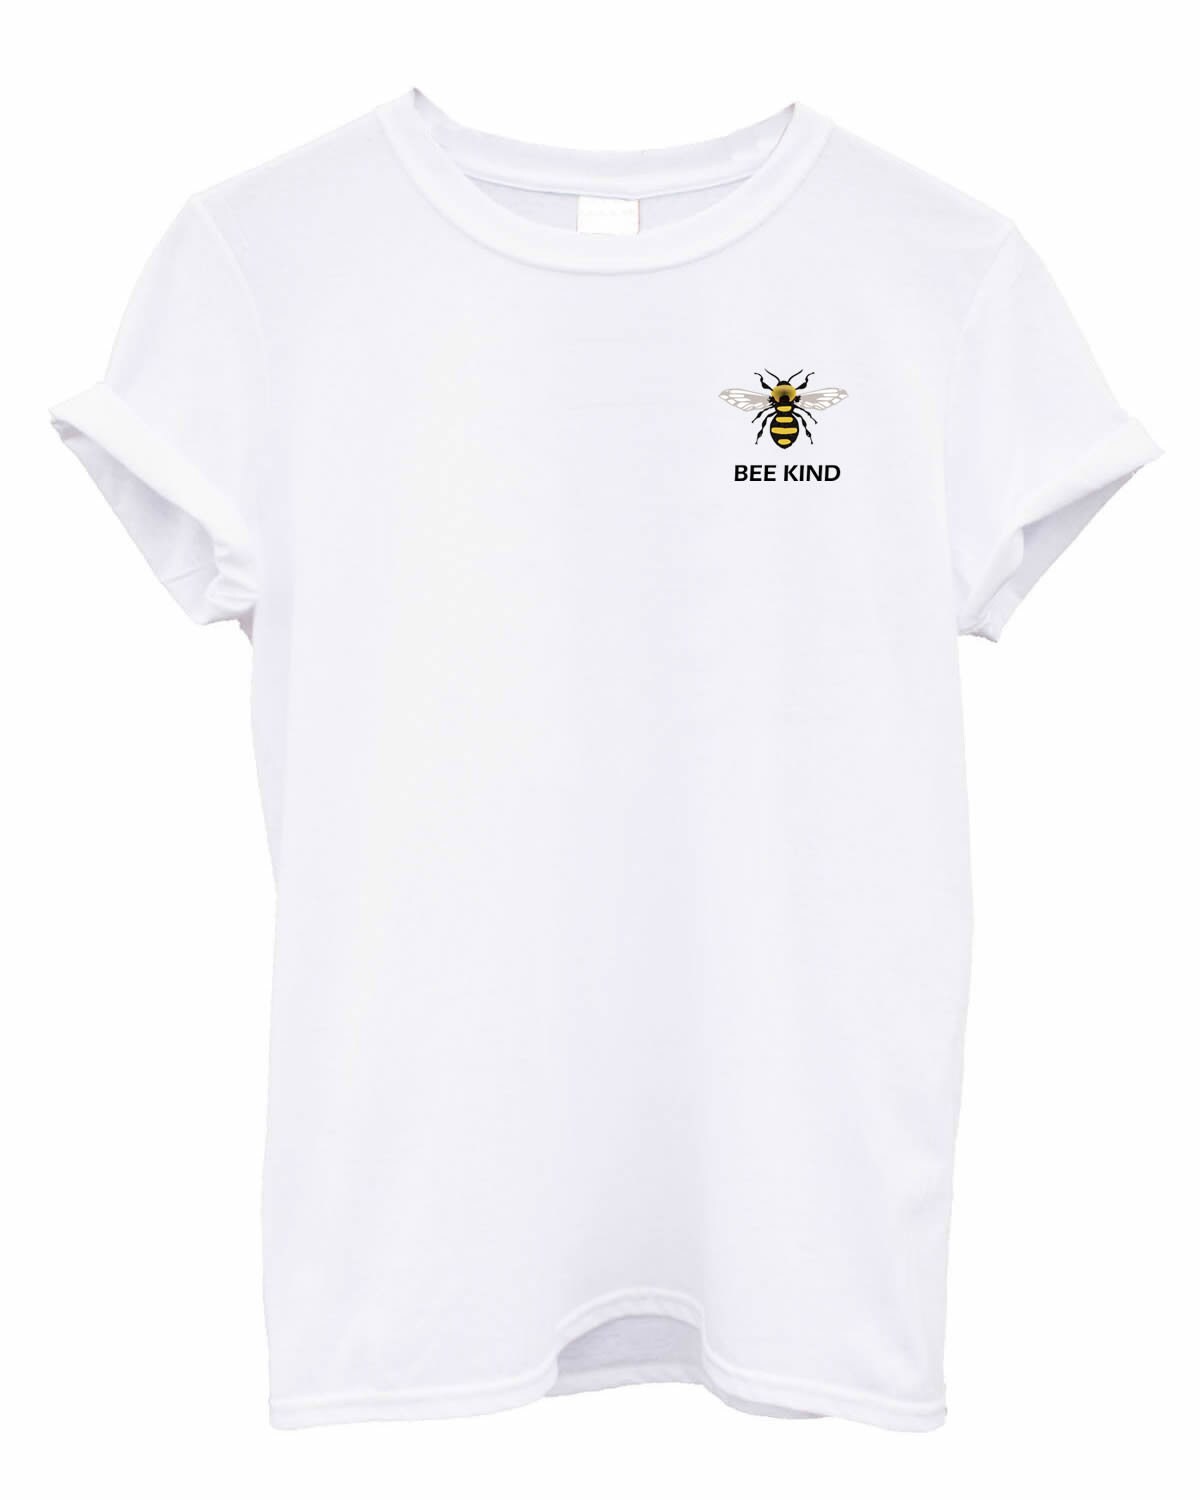 Bee Kind T-shirt Top Be Kind Tshirt Tee Shirt - Etsy UK